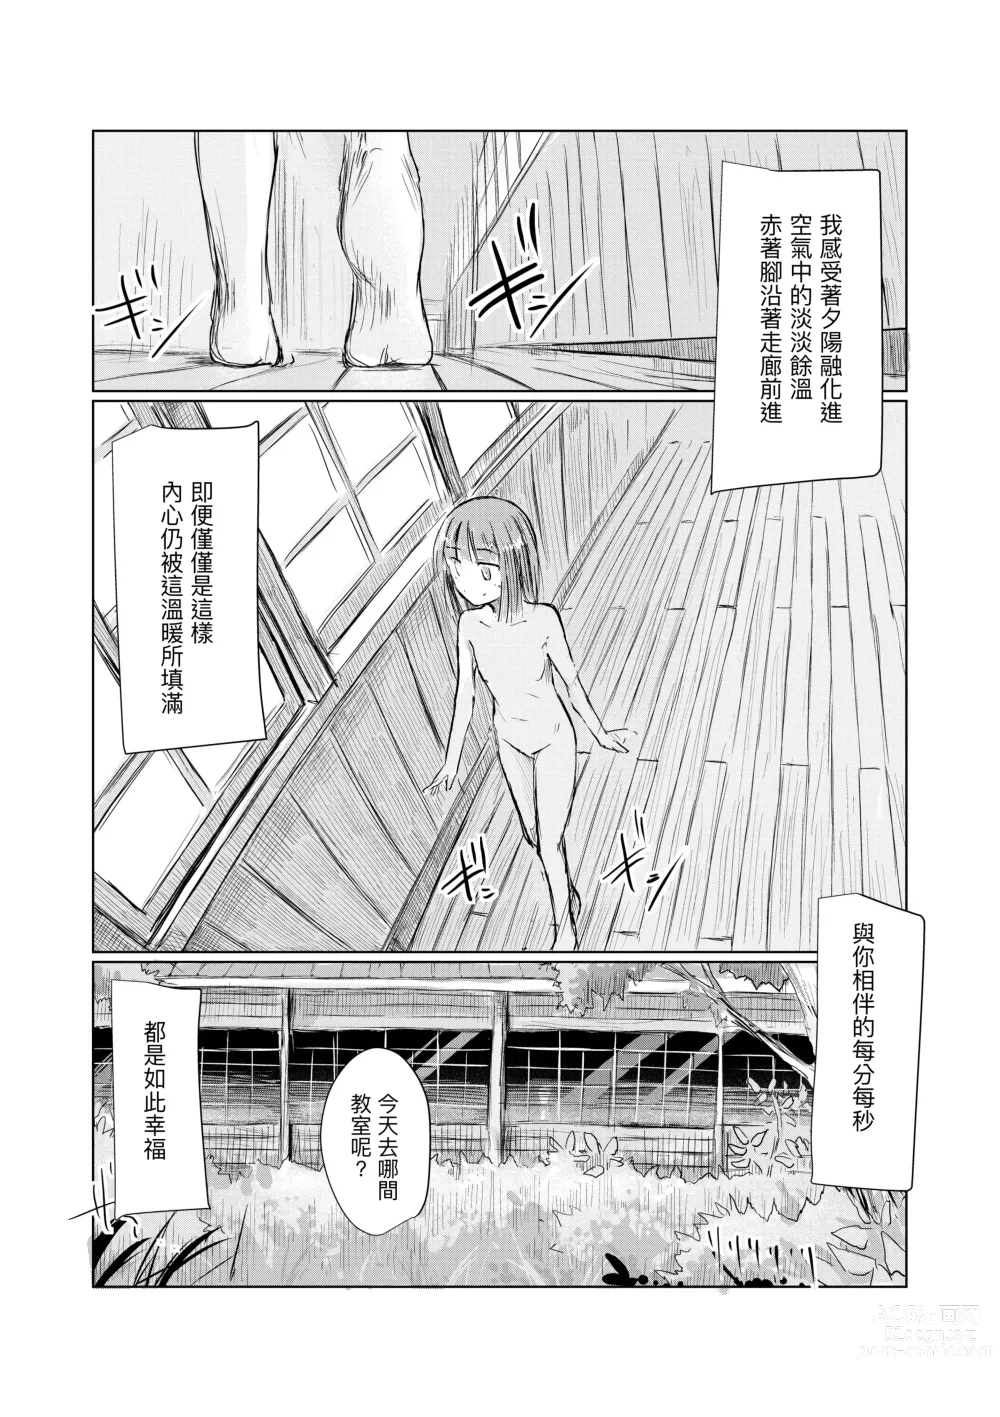 Page 7 of doujinshi Shoujo to Haikousha II